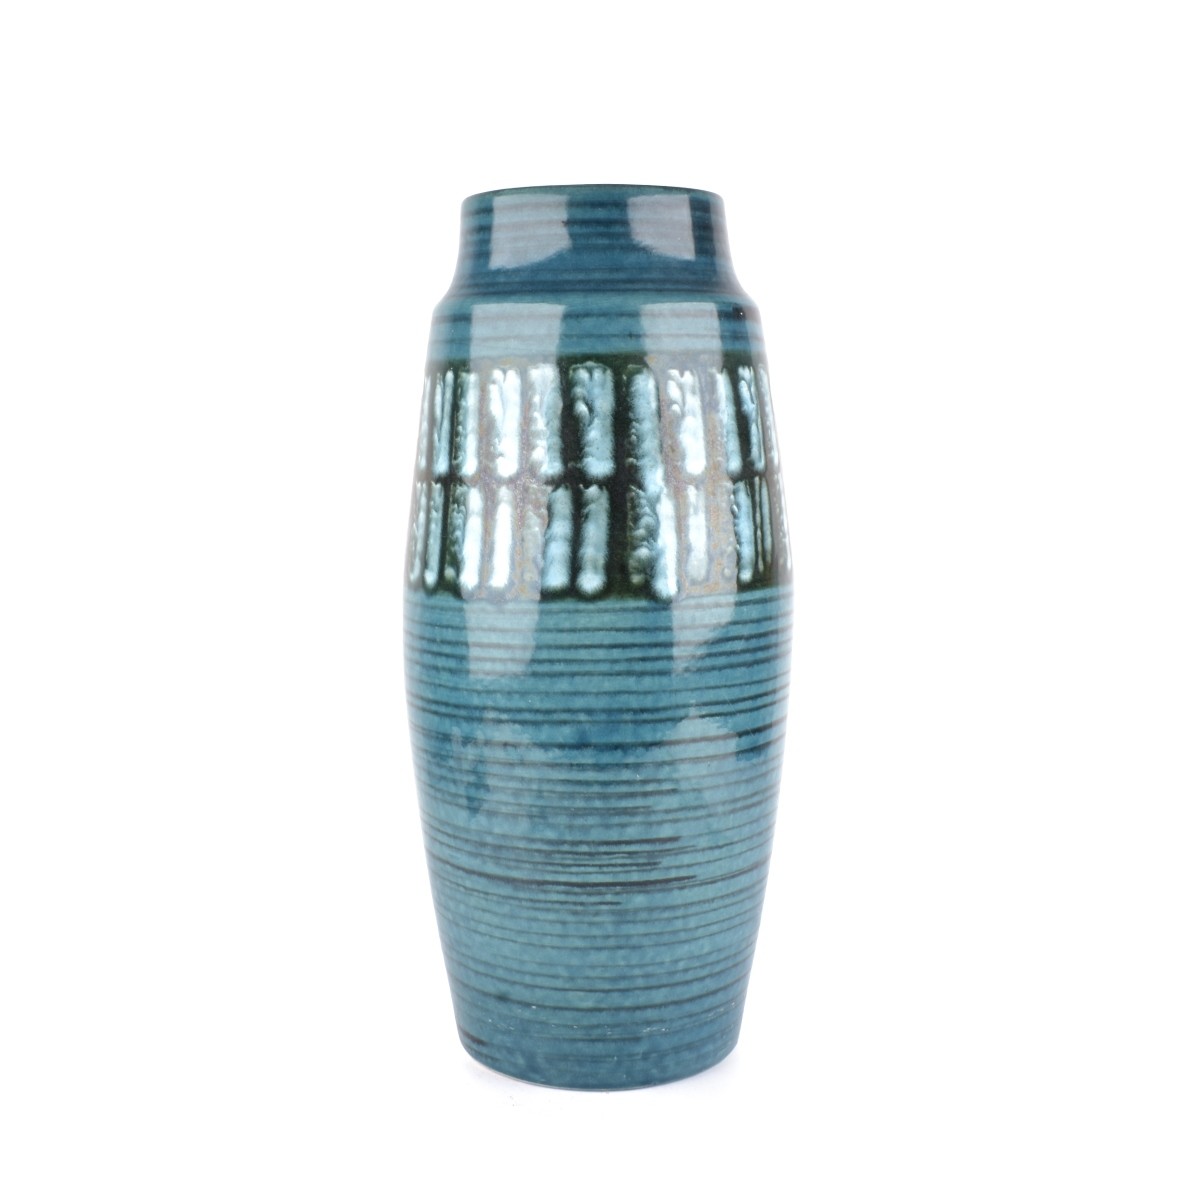 Scheurich Pottery Vase